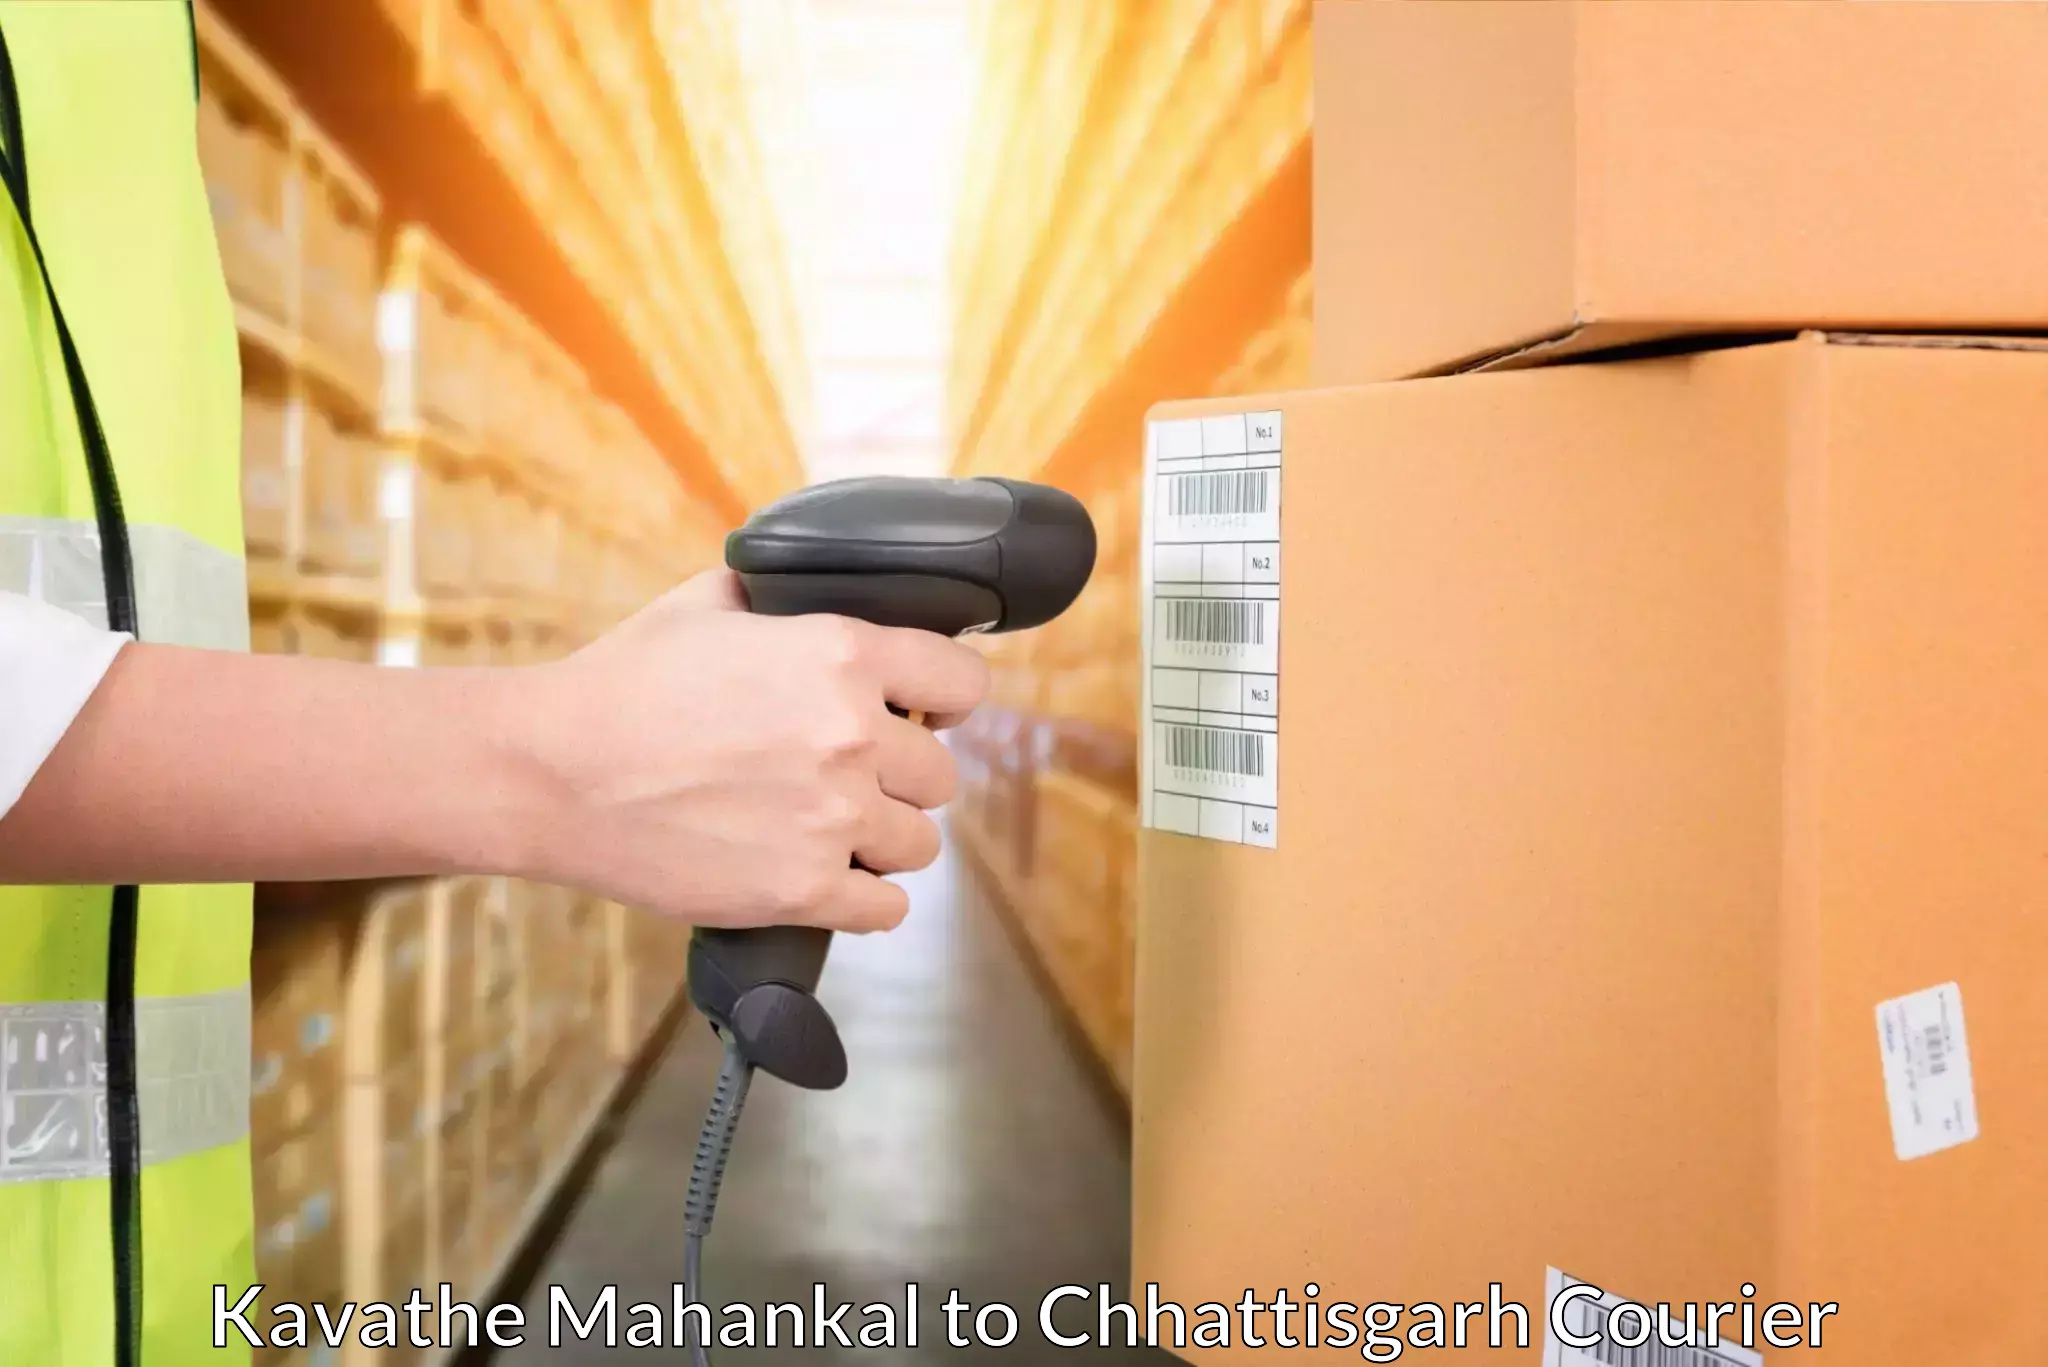 High-capacity parcel service Kavathe Mahankal to Ramanujganj